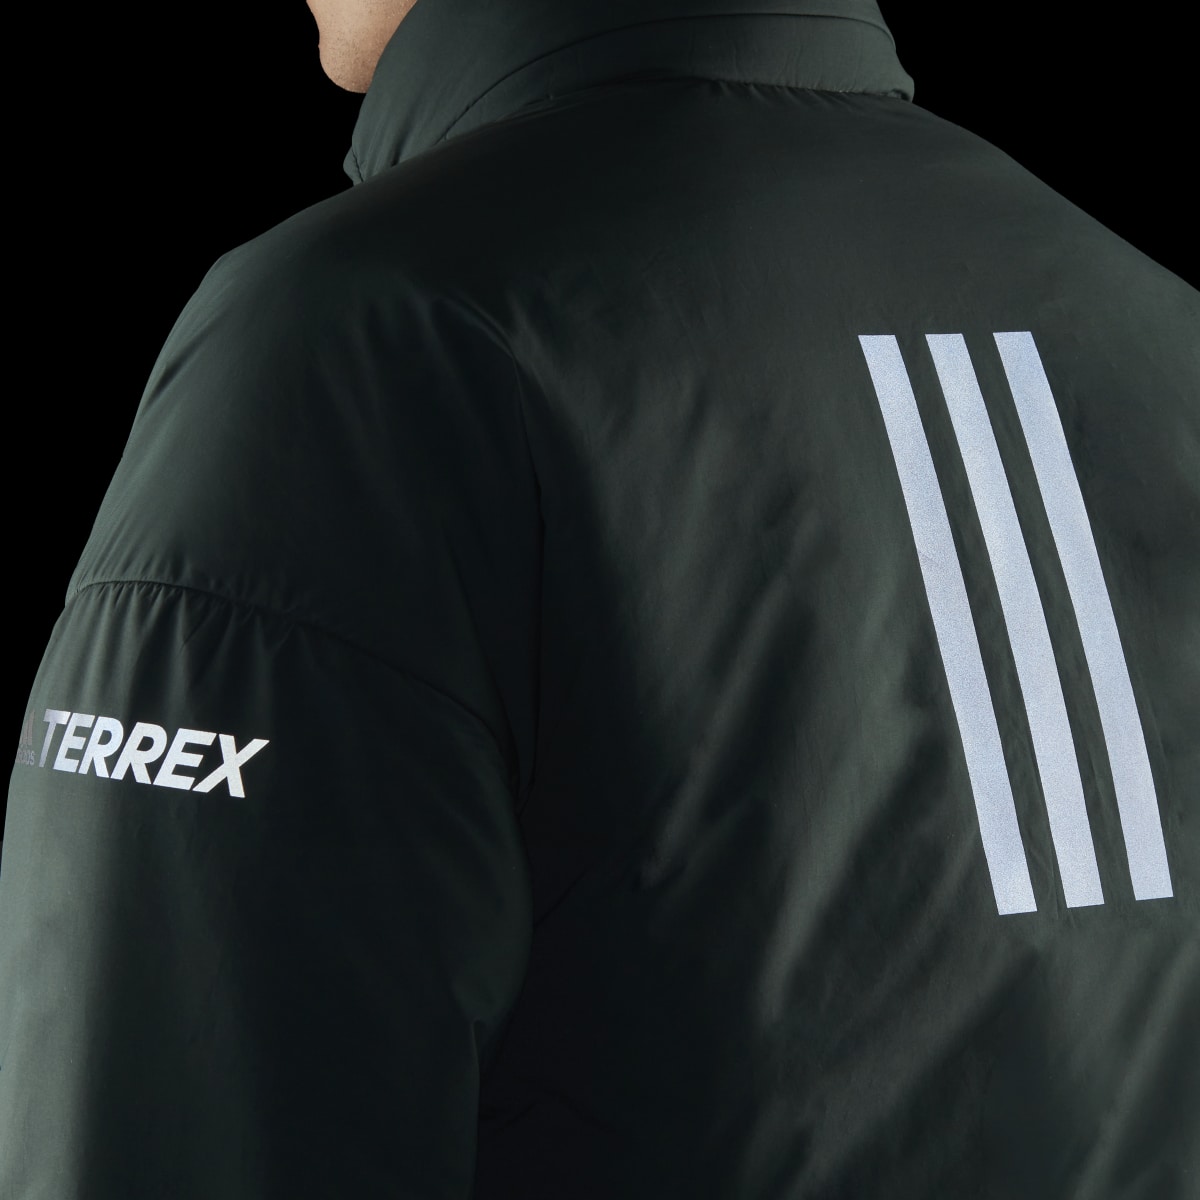 Adidas Terrex CT MYSHELTER Insulated Jacket. 7